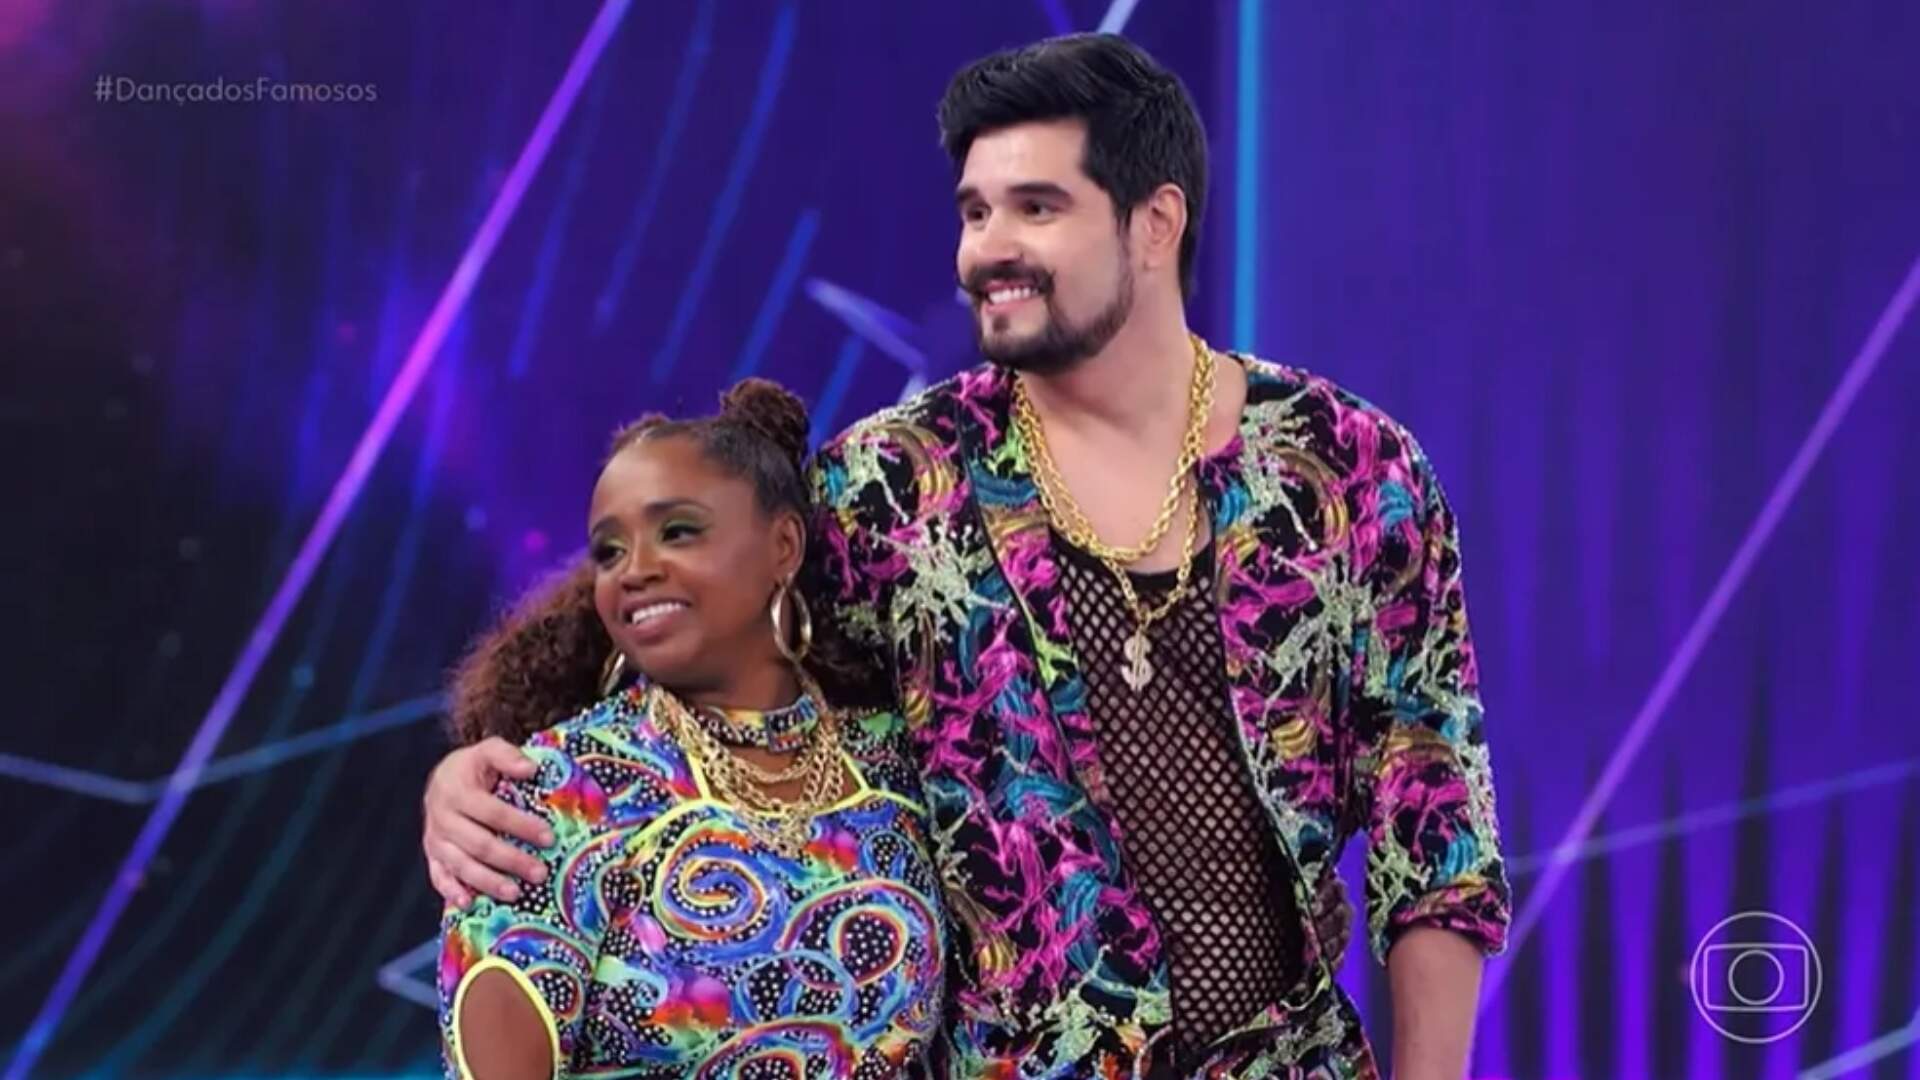 Dança dos Famosos: Daiane dos Santos quebra recordes com apresentação de funk - Metropolitana FM